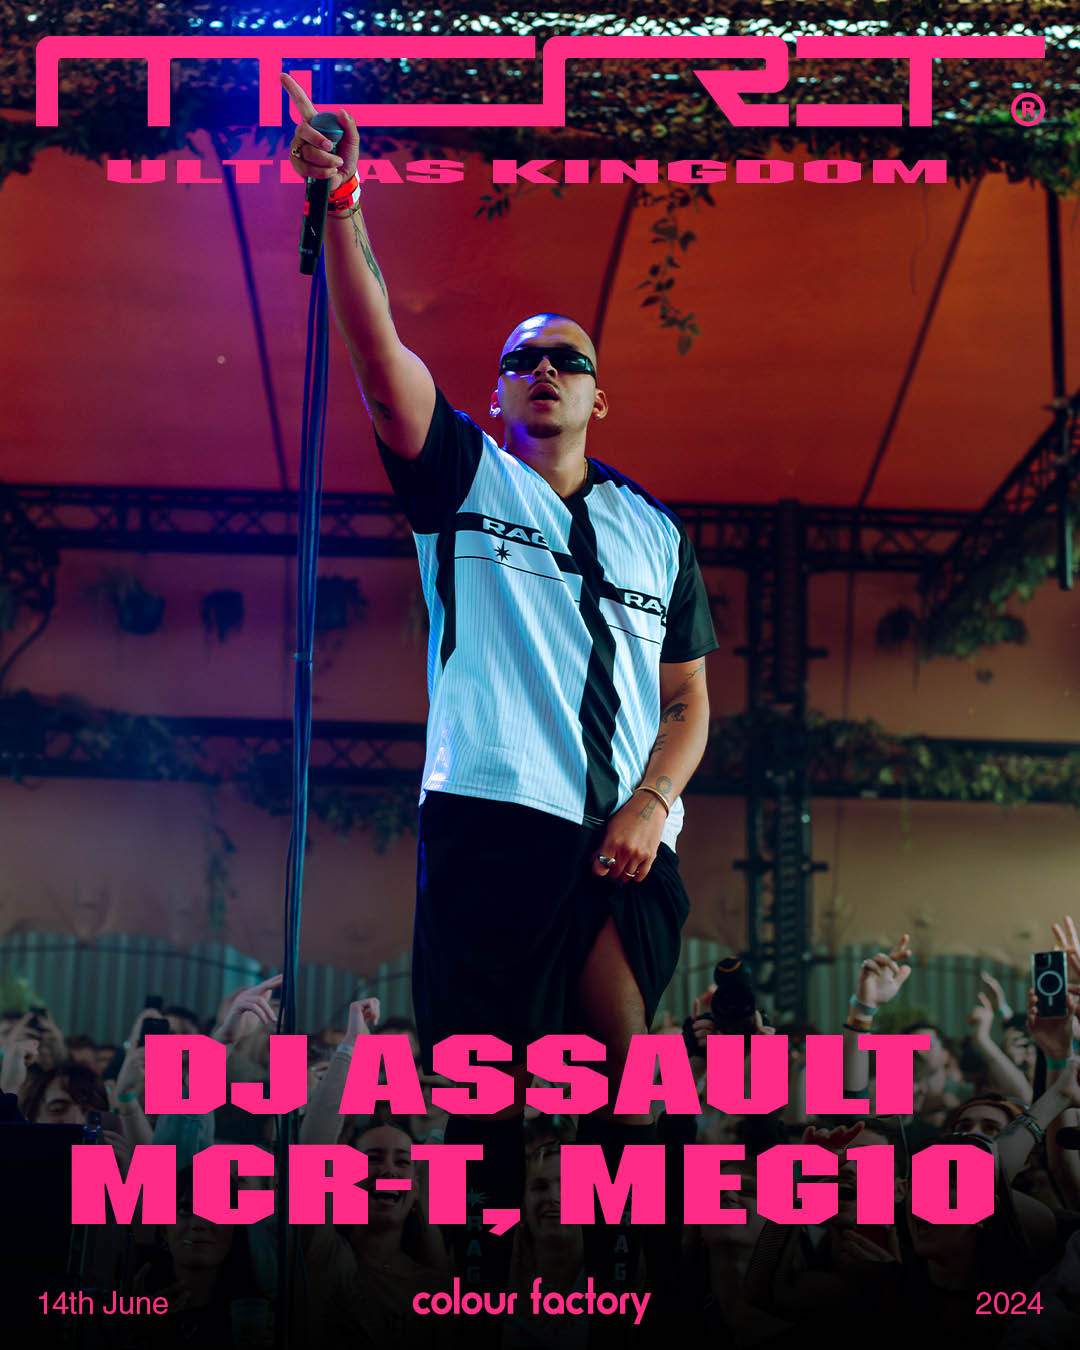 MCR-T Ultras Kingdom: DJ Assault & Meg10 - フライヤー表